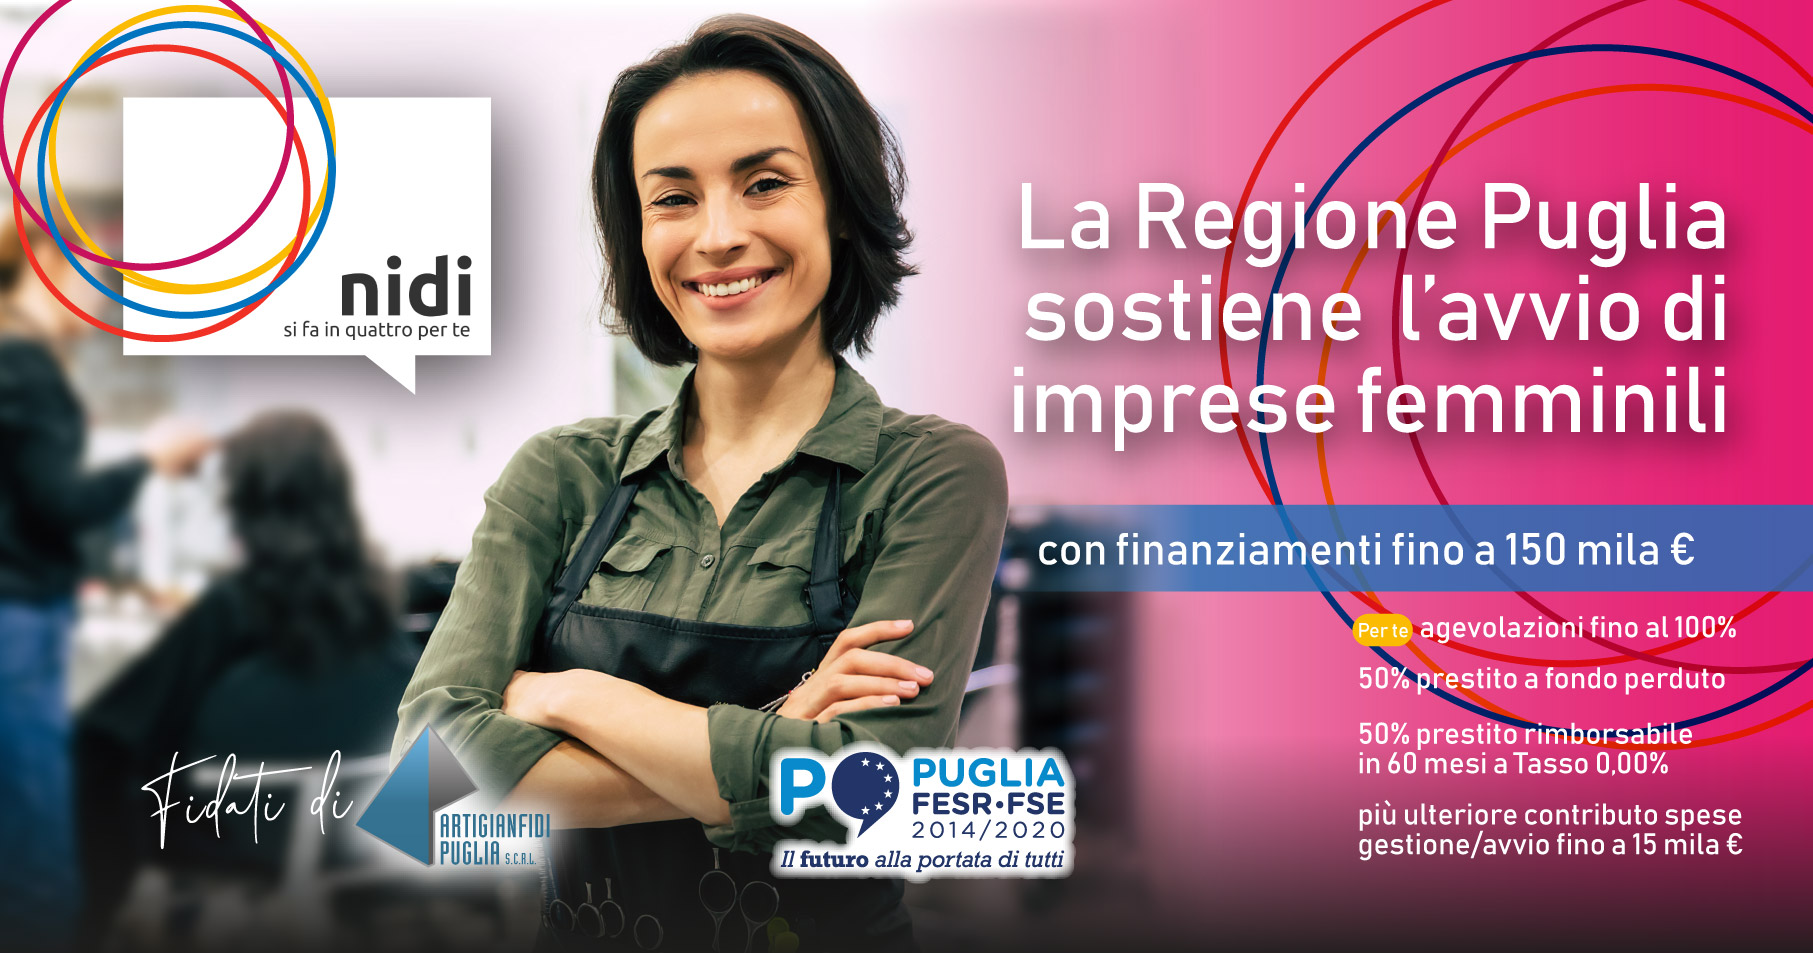 La @RegionePuglia sostiene l’avvio di imprese femminili con finanziamenti fino a 150.000,00 €